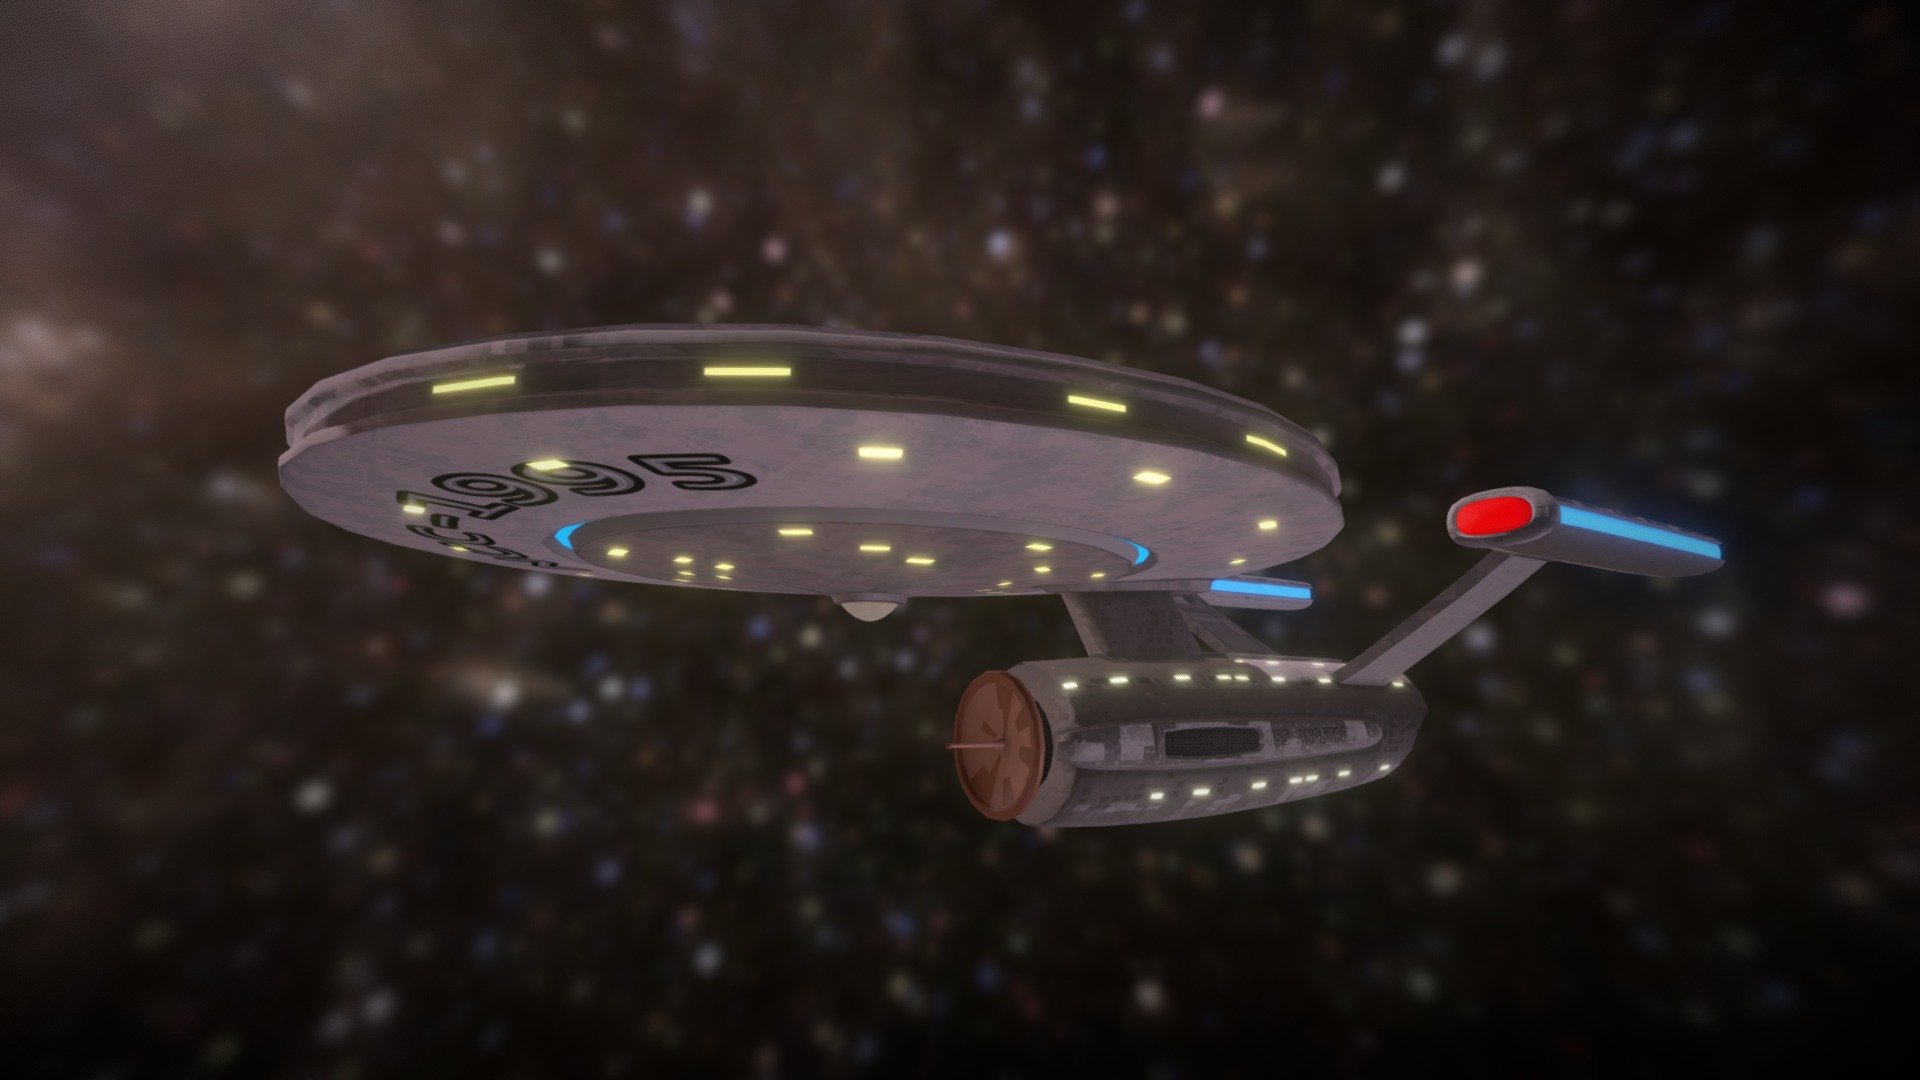 USS Angstrom (Star Trek fanart)